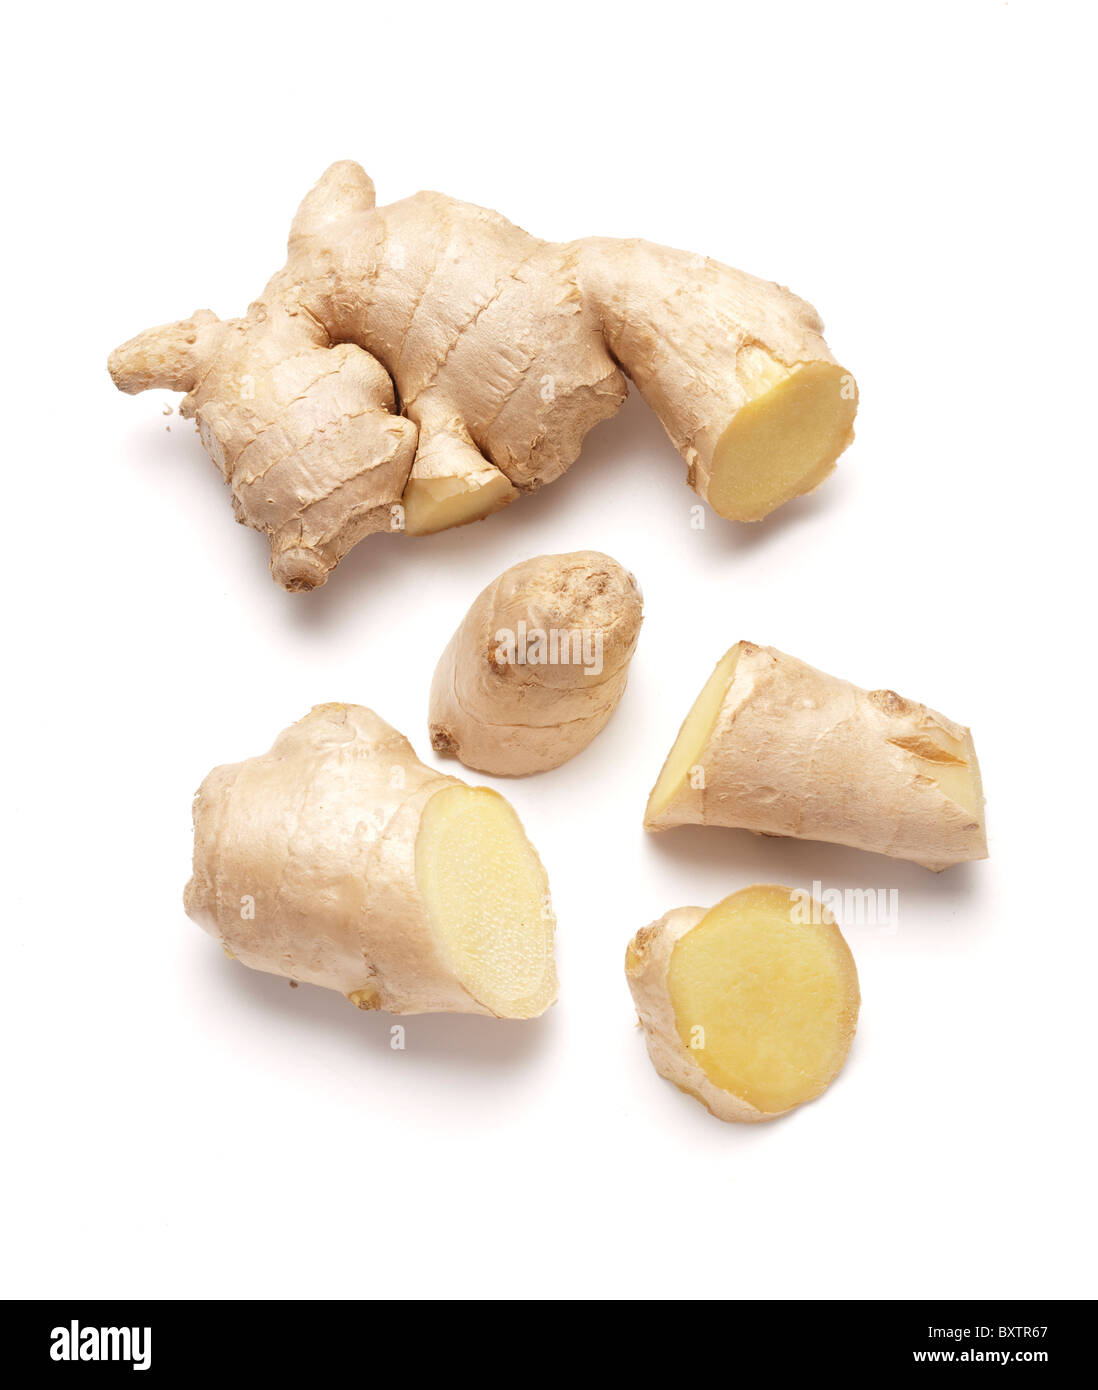 Le gingembre est le rhizome de la plante Zingiber officinale, consommés ensemble comme un mets délicat, de la médecine, ou d'épices. Banque D'Images